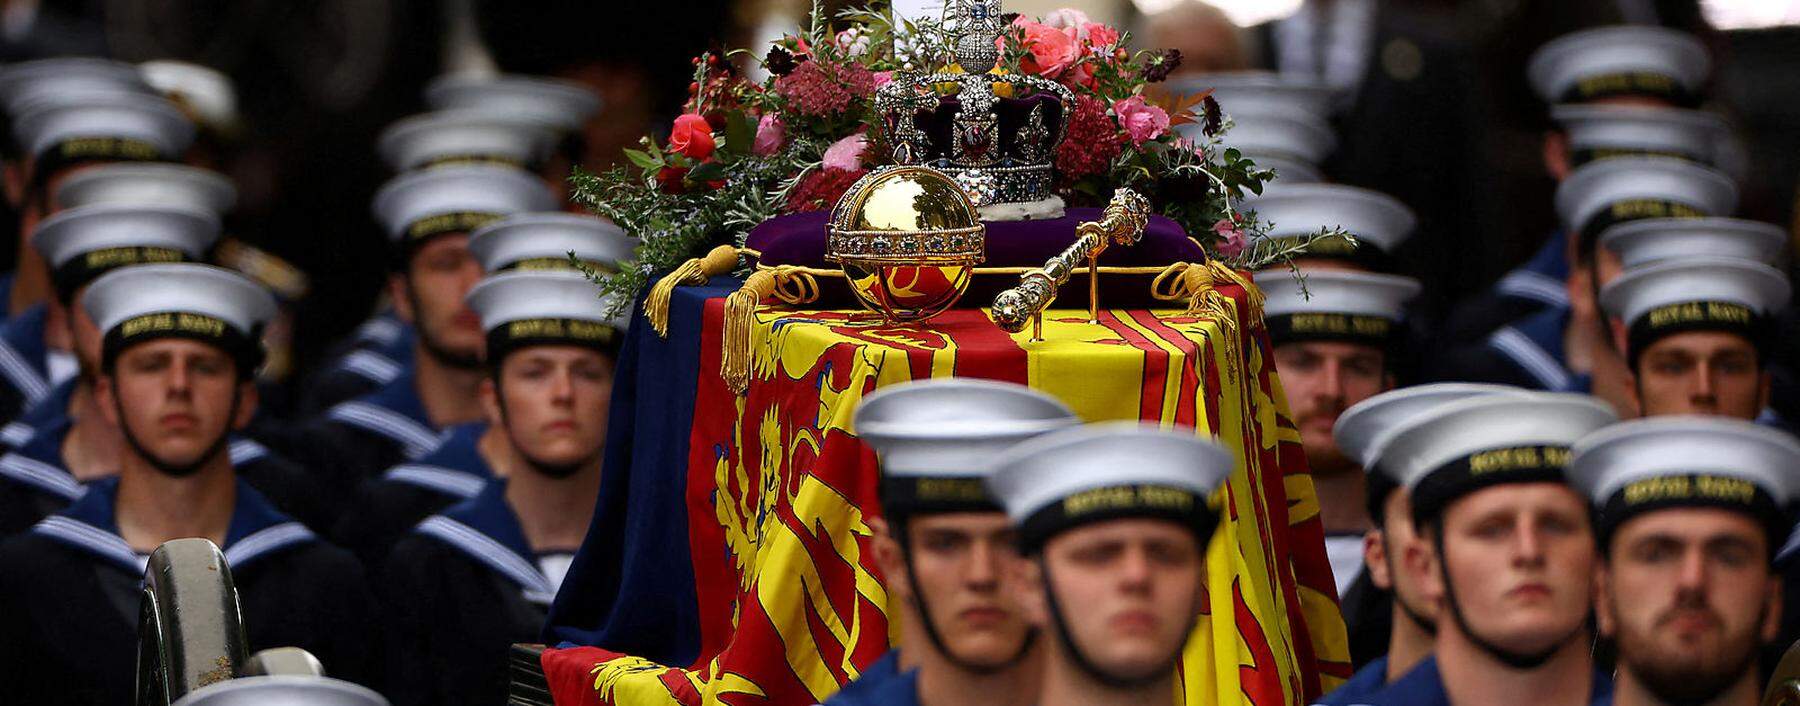 Marinesoldaten schreiten mit dem Sarg der Queen mit allen Insignien in die Westminster Abbey im Herzen Londons. Das Zeremoniell war seit Jahrzehnten festgeschrieben.